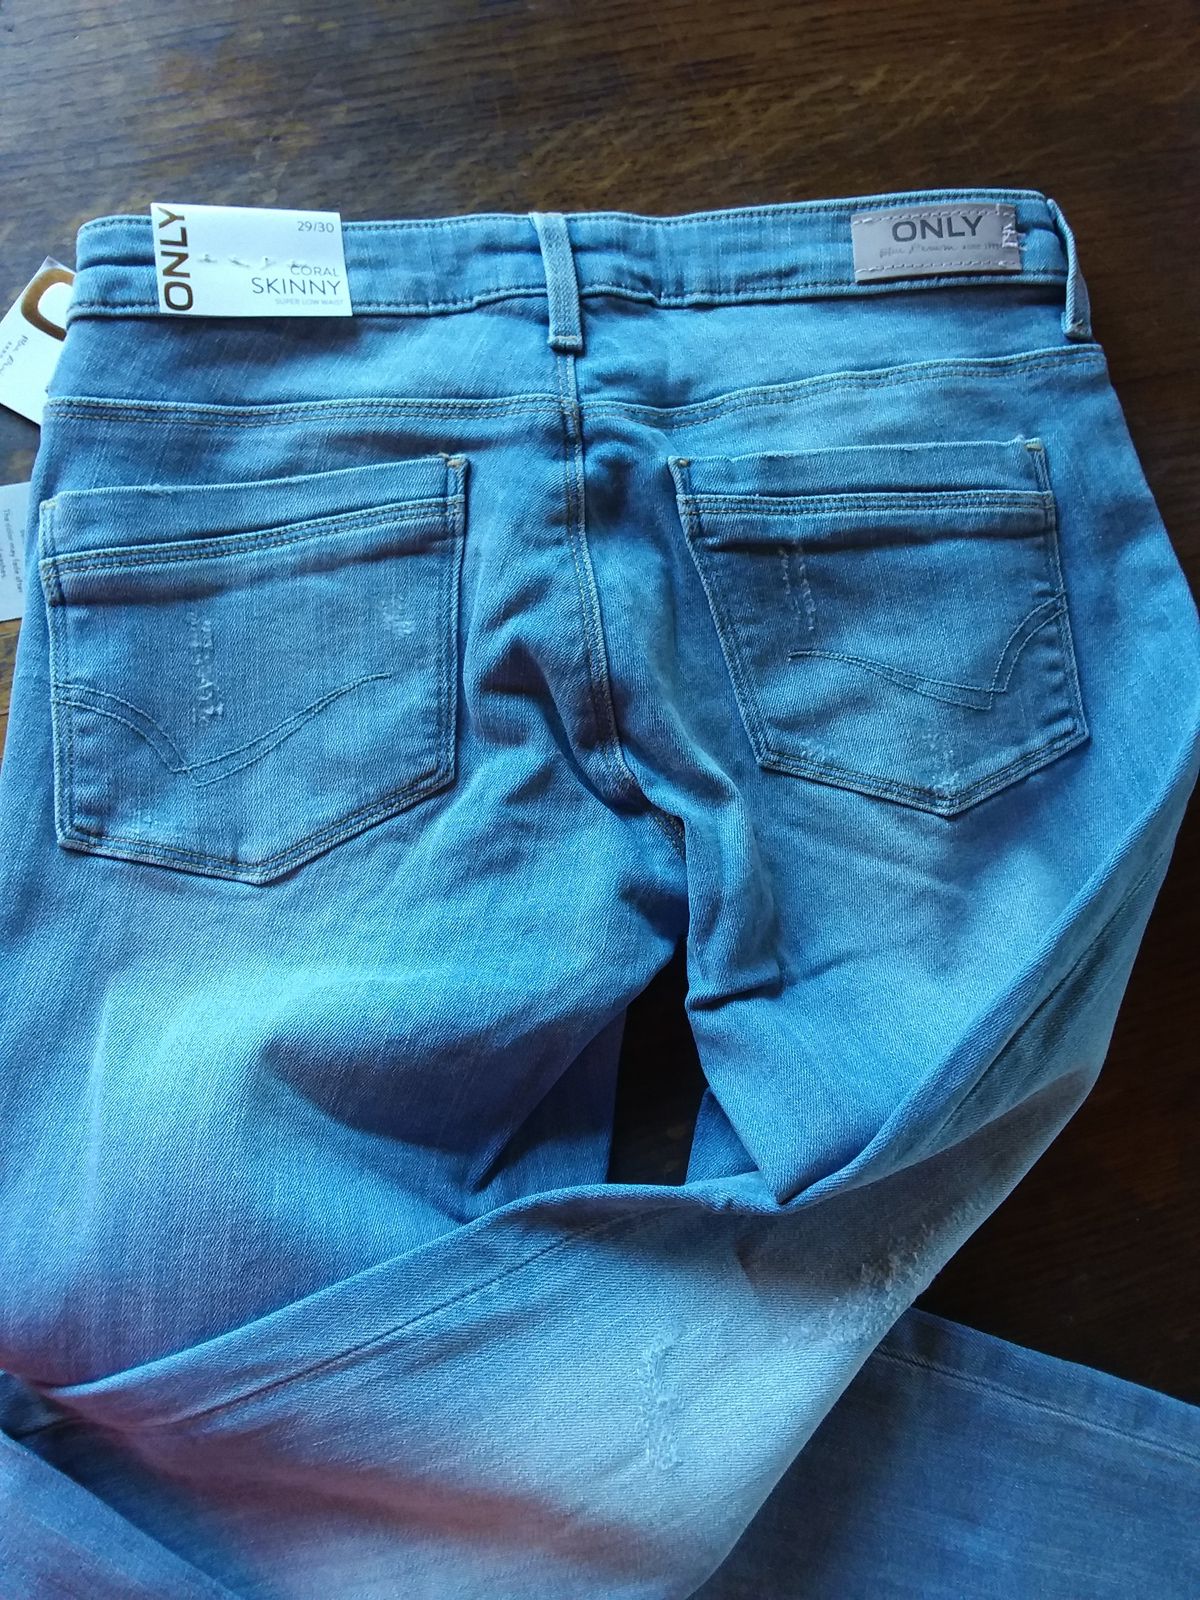 arrière jean Coral CRE185063 denim light bleu - Only missbonsplansdunet clic an fit personal shopper box vêtements styliste